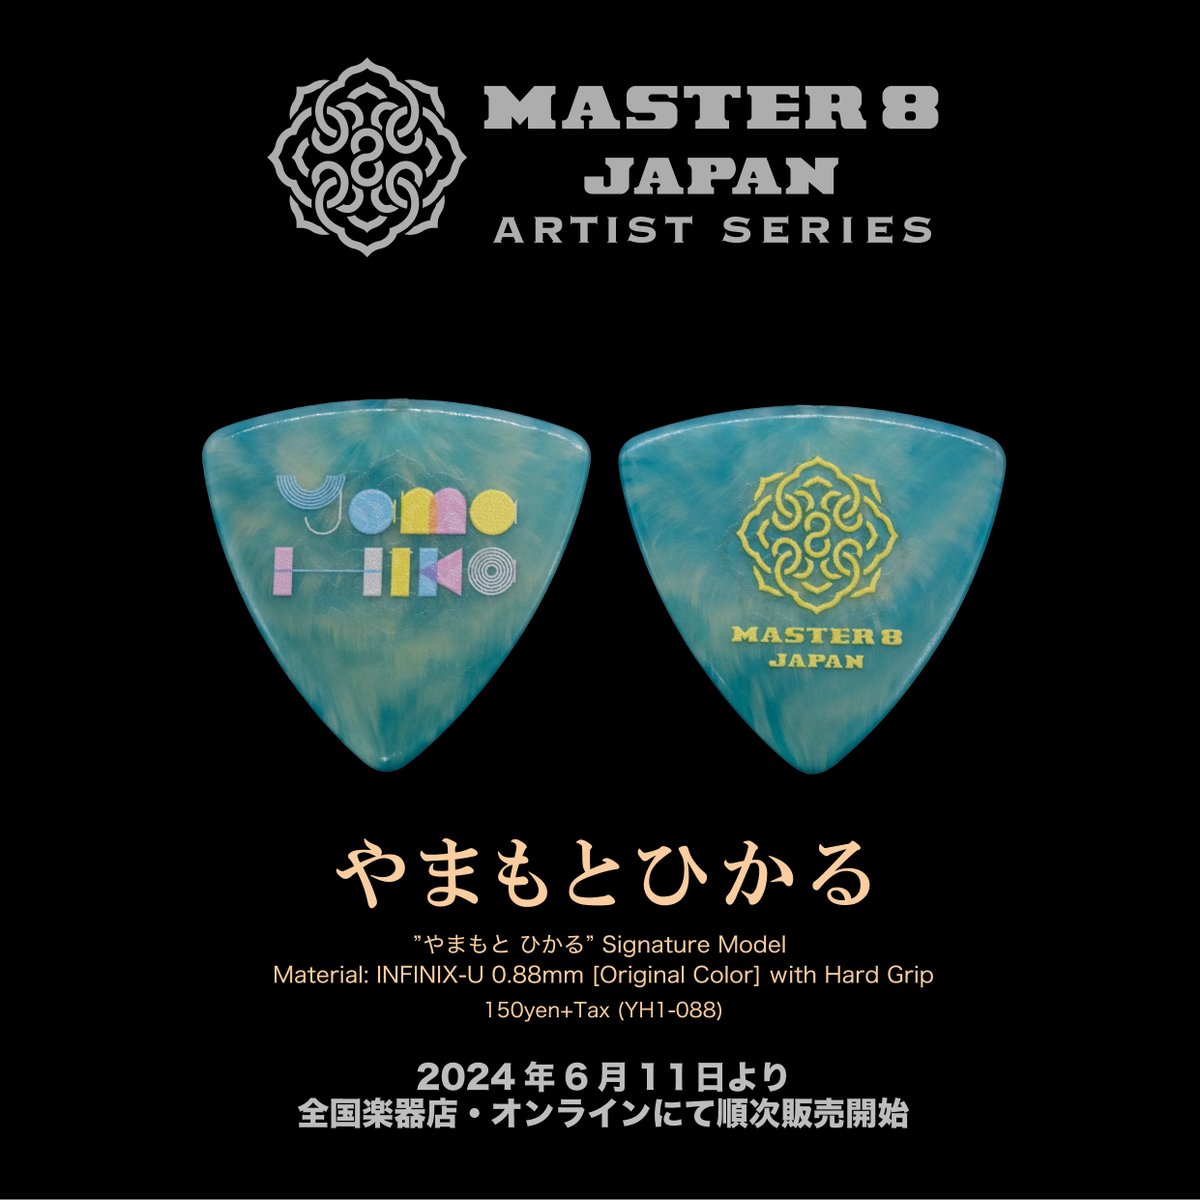 Master8Japan tweet picture